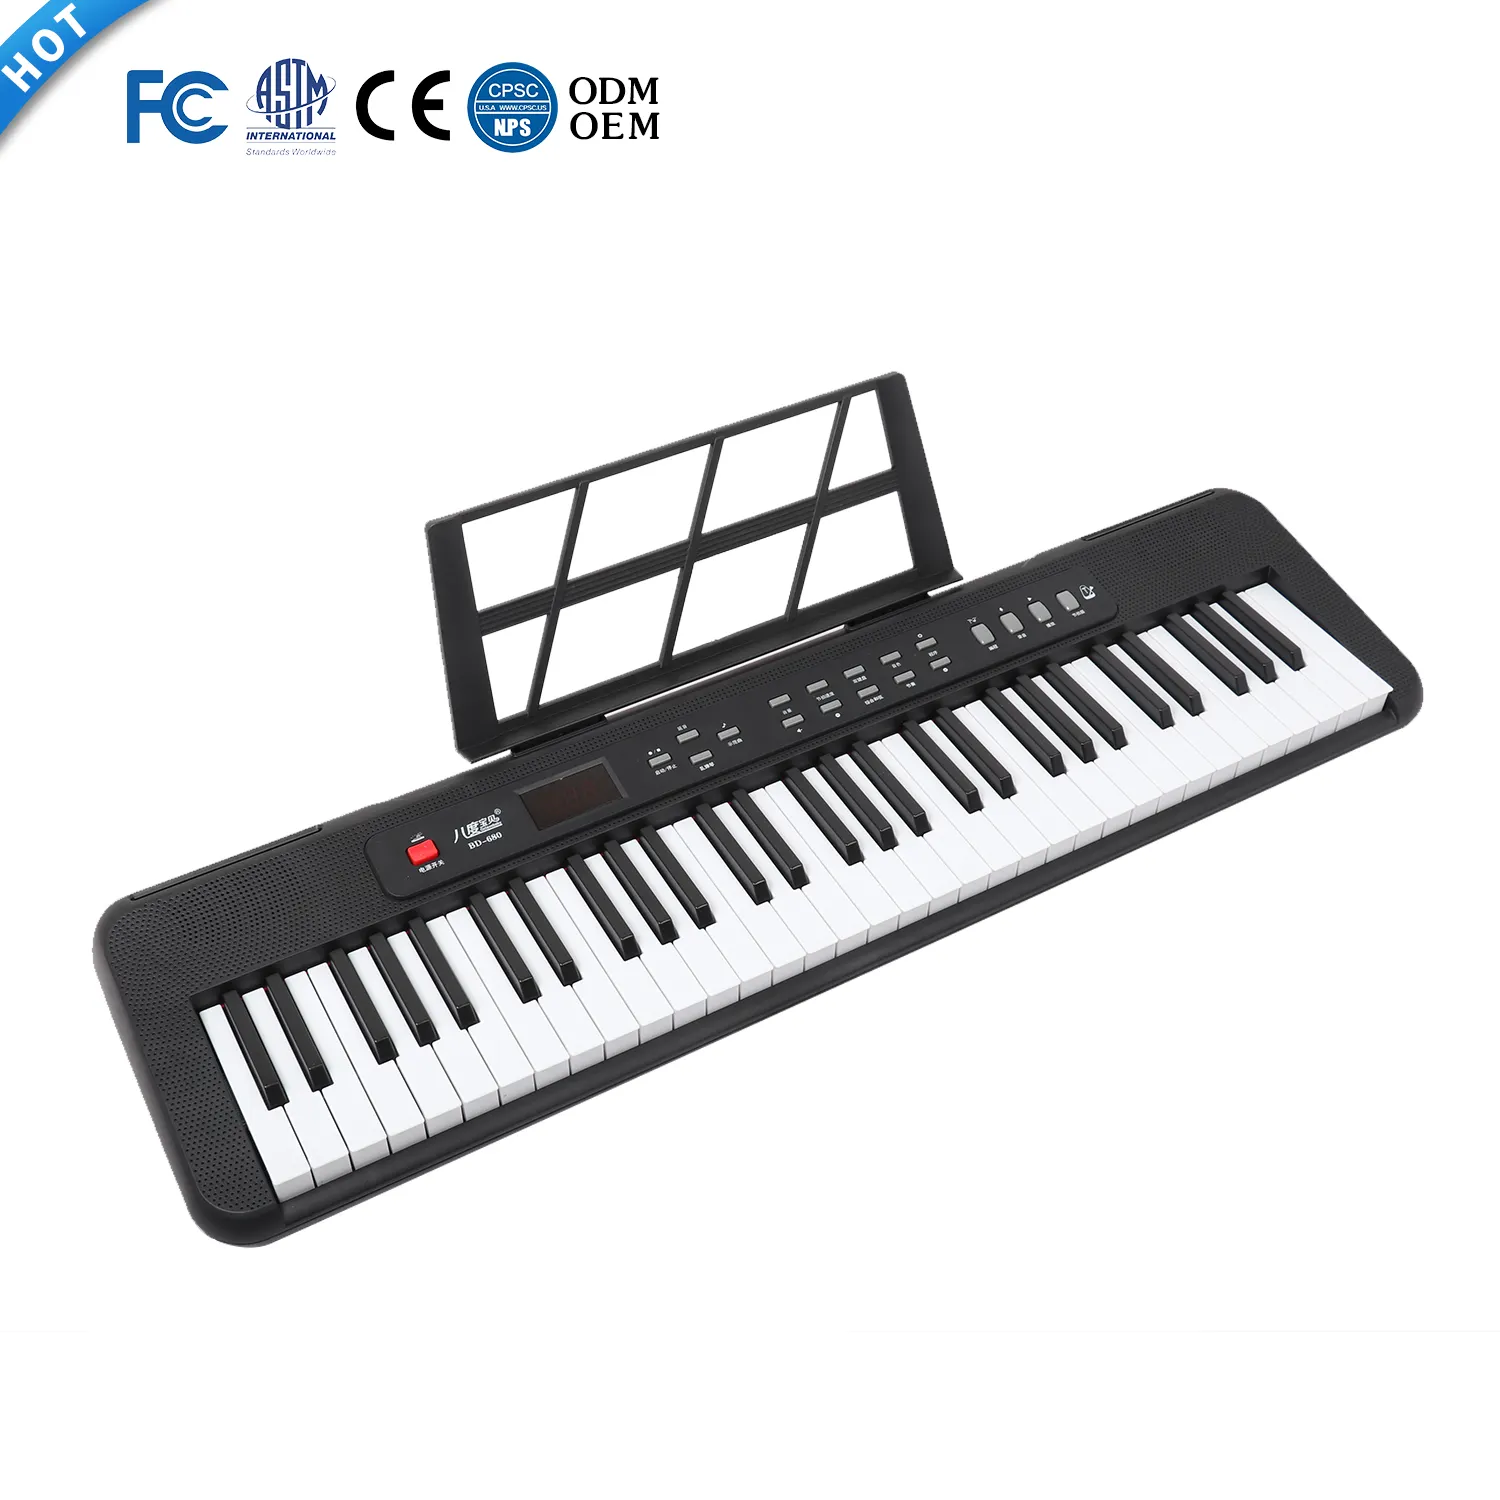 बीडीम्यूजिक फुल आकार 61 कुंजी डिजिटल पियानो शुरुआती सिंथेसाइज़र टेक्लाडोस संगीत कीबोर्ड उपकरण बिक्री के लिए मानक कुंजी कुंजी